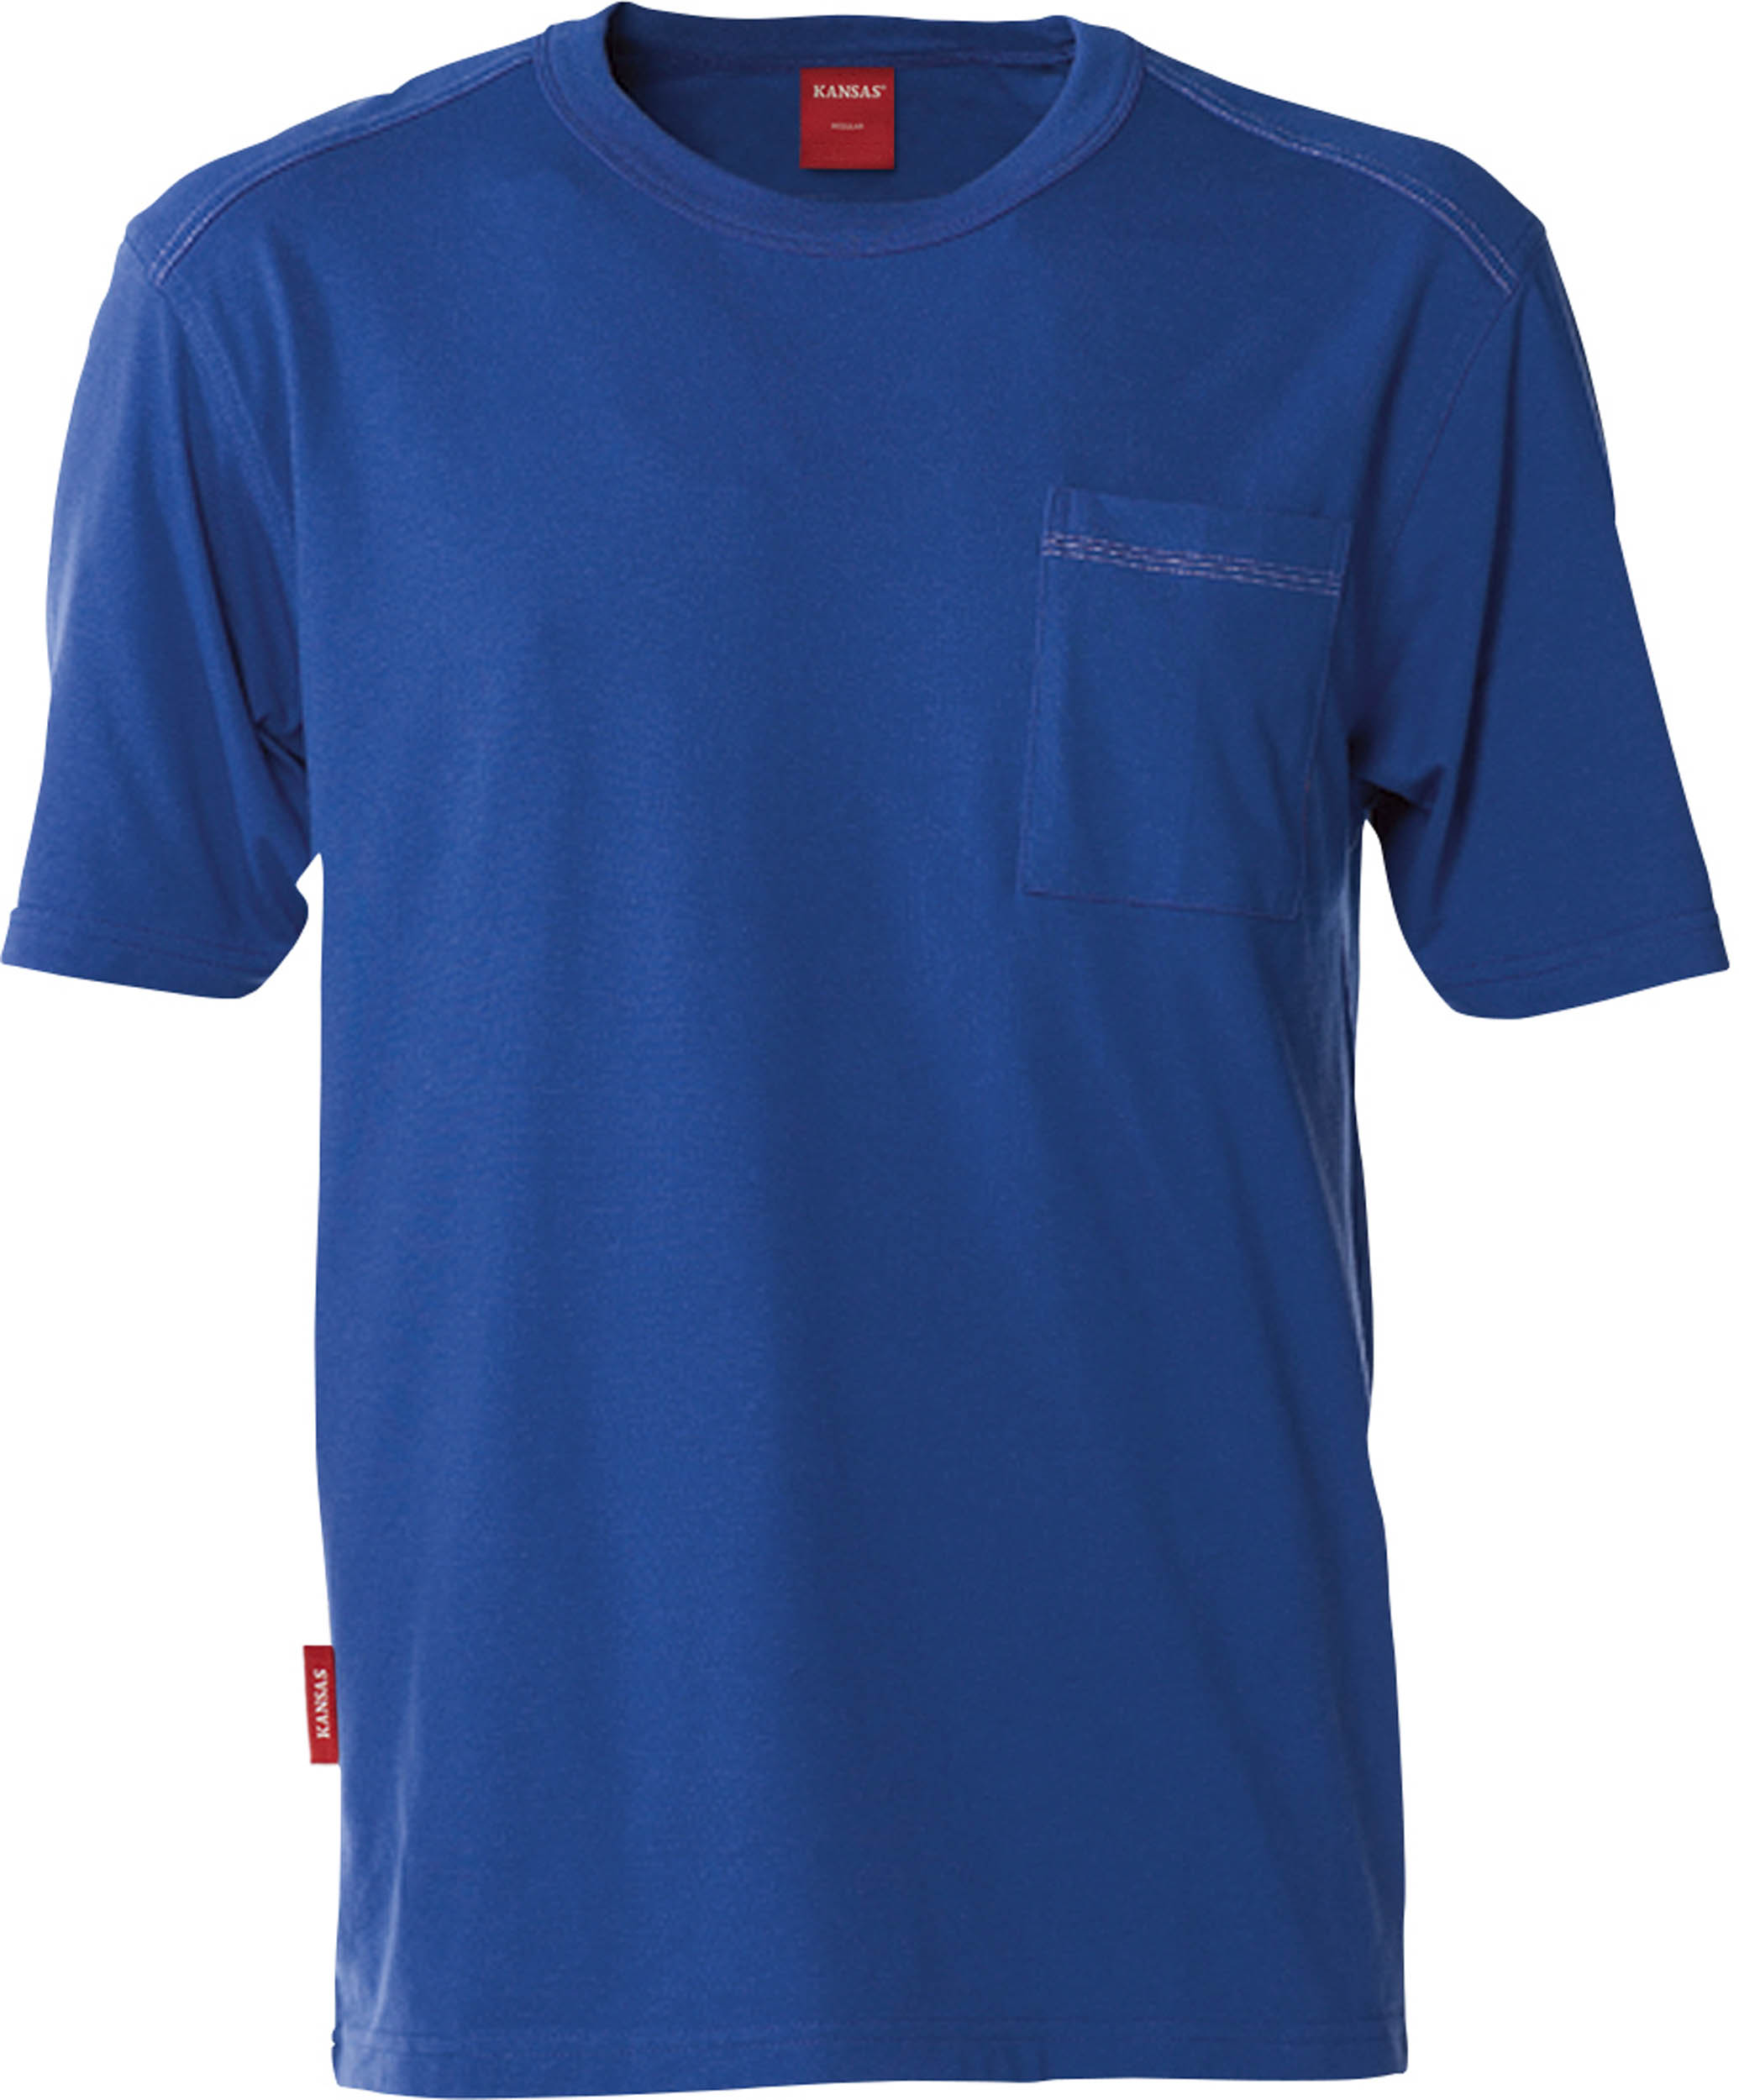 KANSAS®-T-Shirt, Gr. 2XL Königsblau 530, Typ 7391 TM - bei HUG Technik ☆